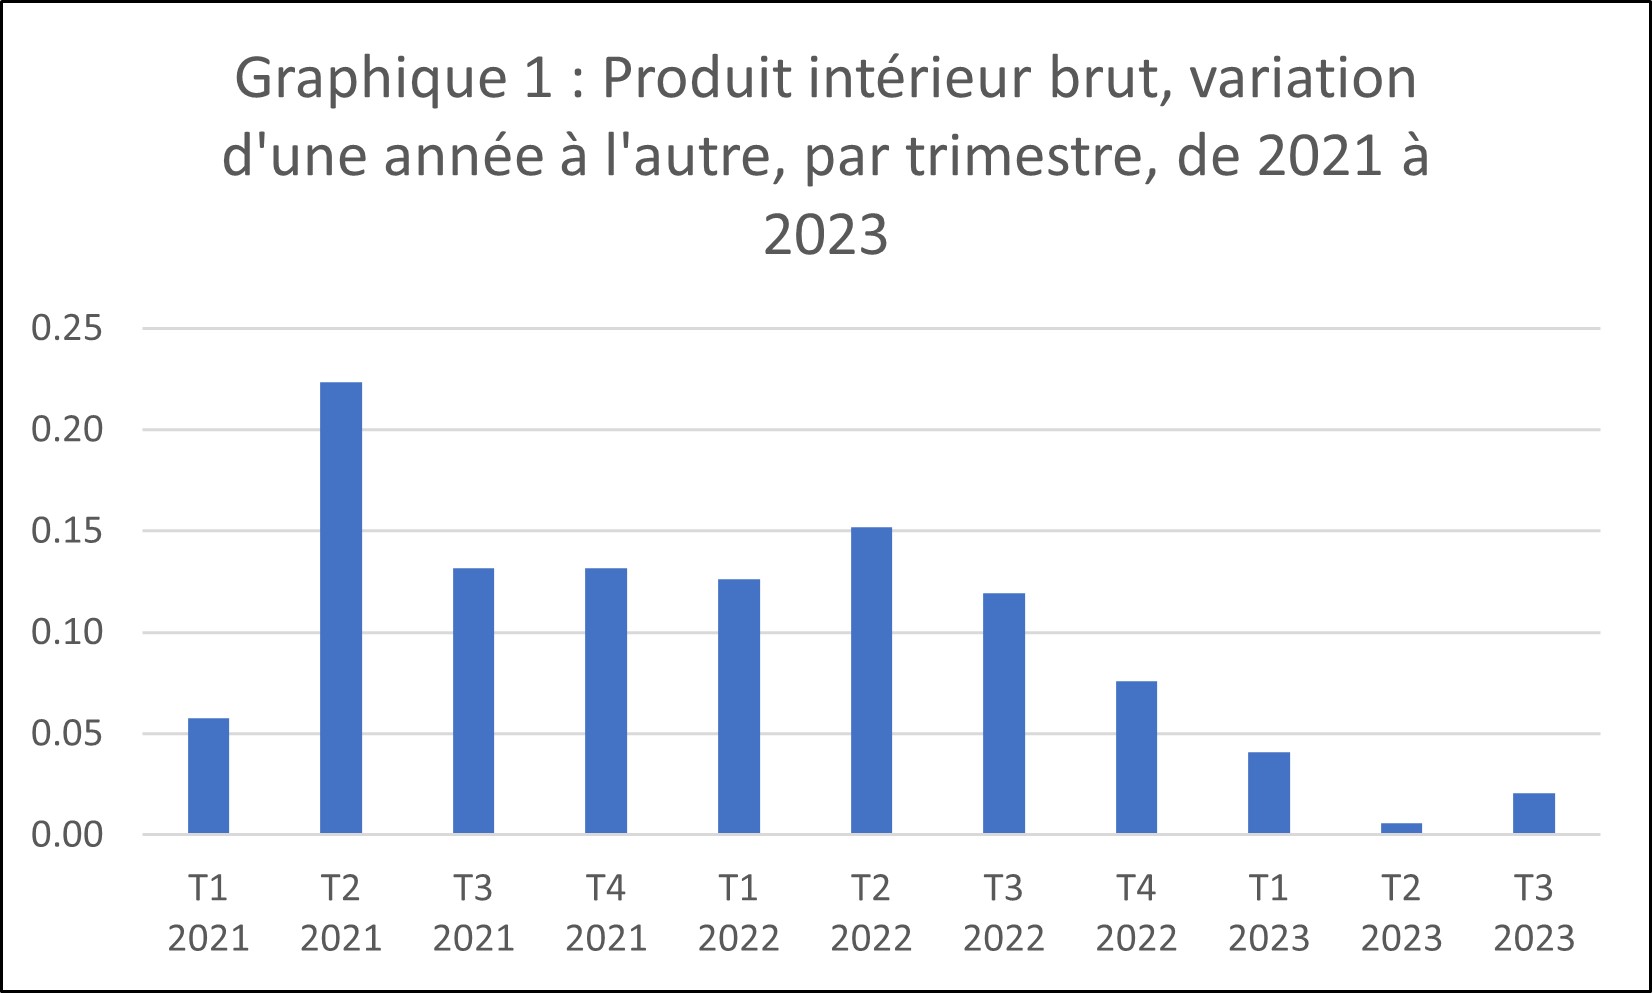 Graphique 1 : Produit intérieur brut, variation d'une année à l'autre, par trimestre, de 2021 à 2023